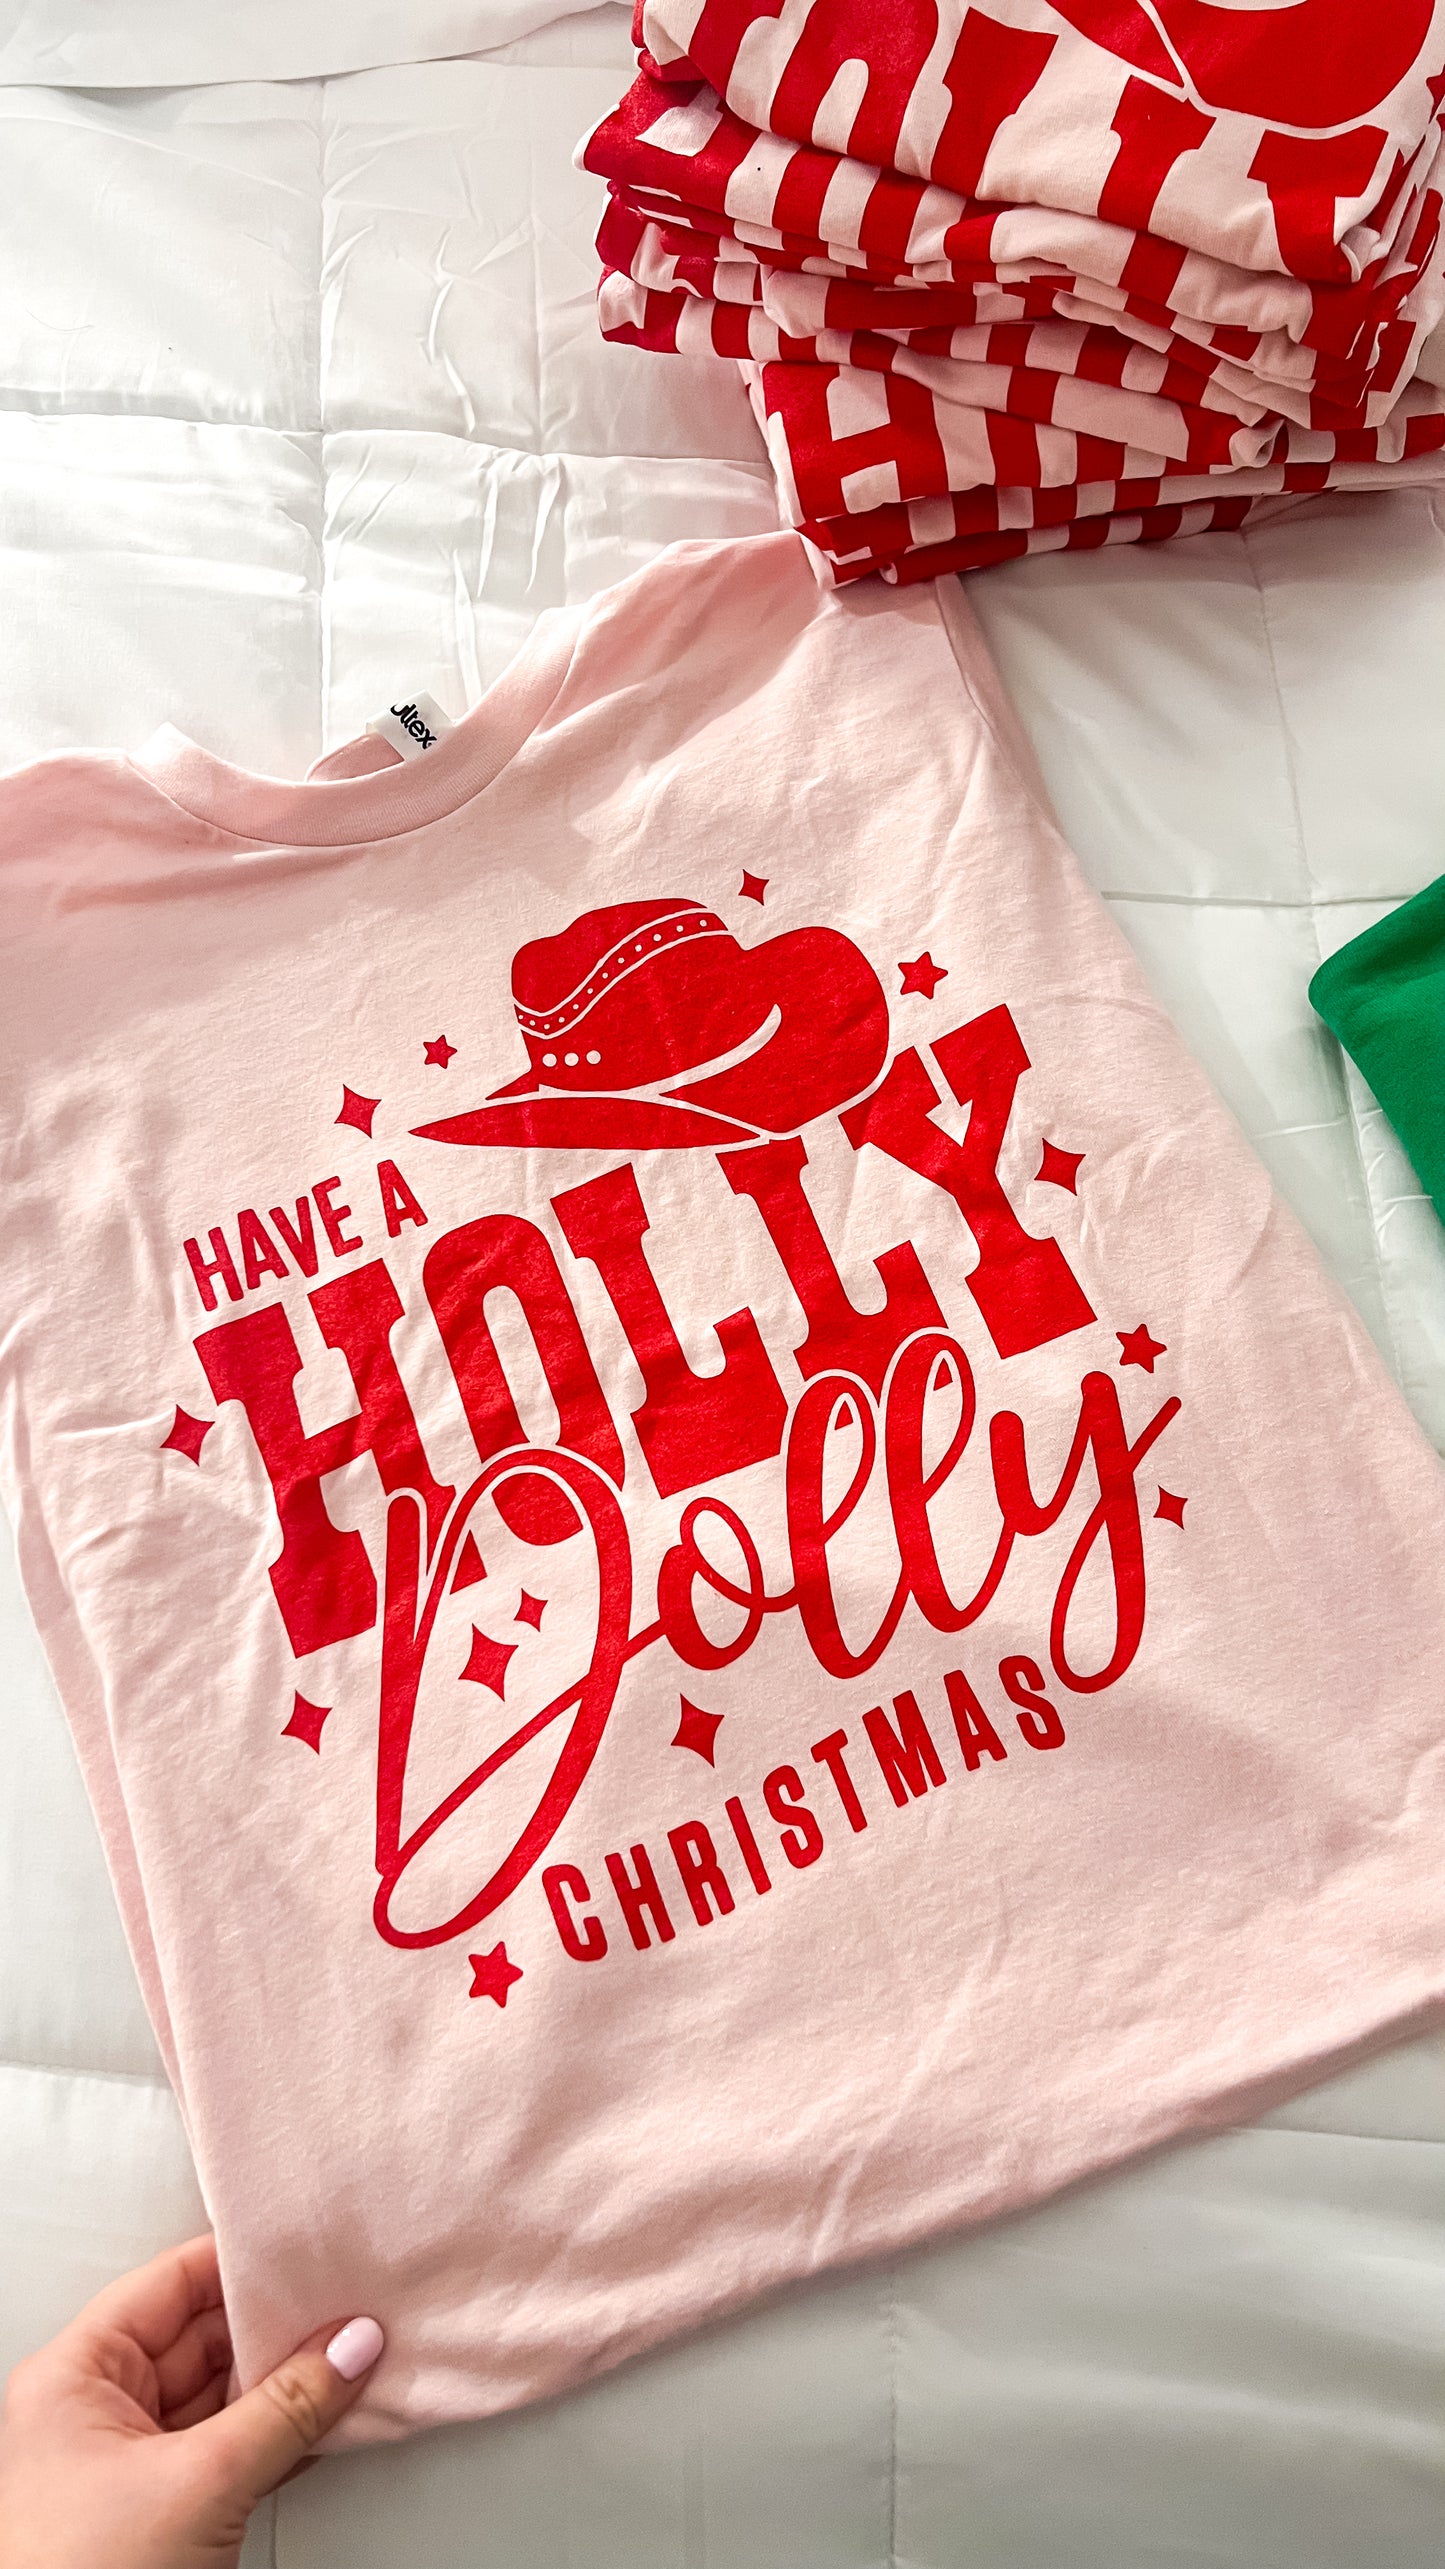 HOLLY DOLLY CHRISTMAS TEE - SALE!